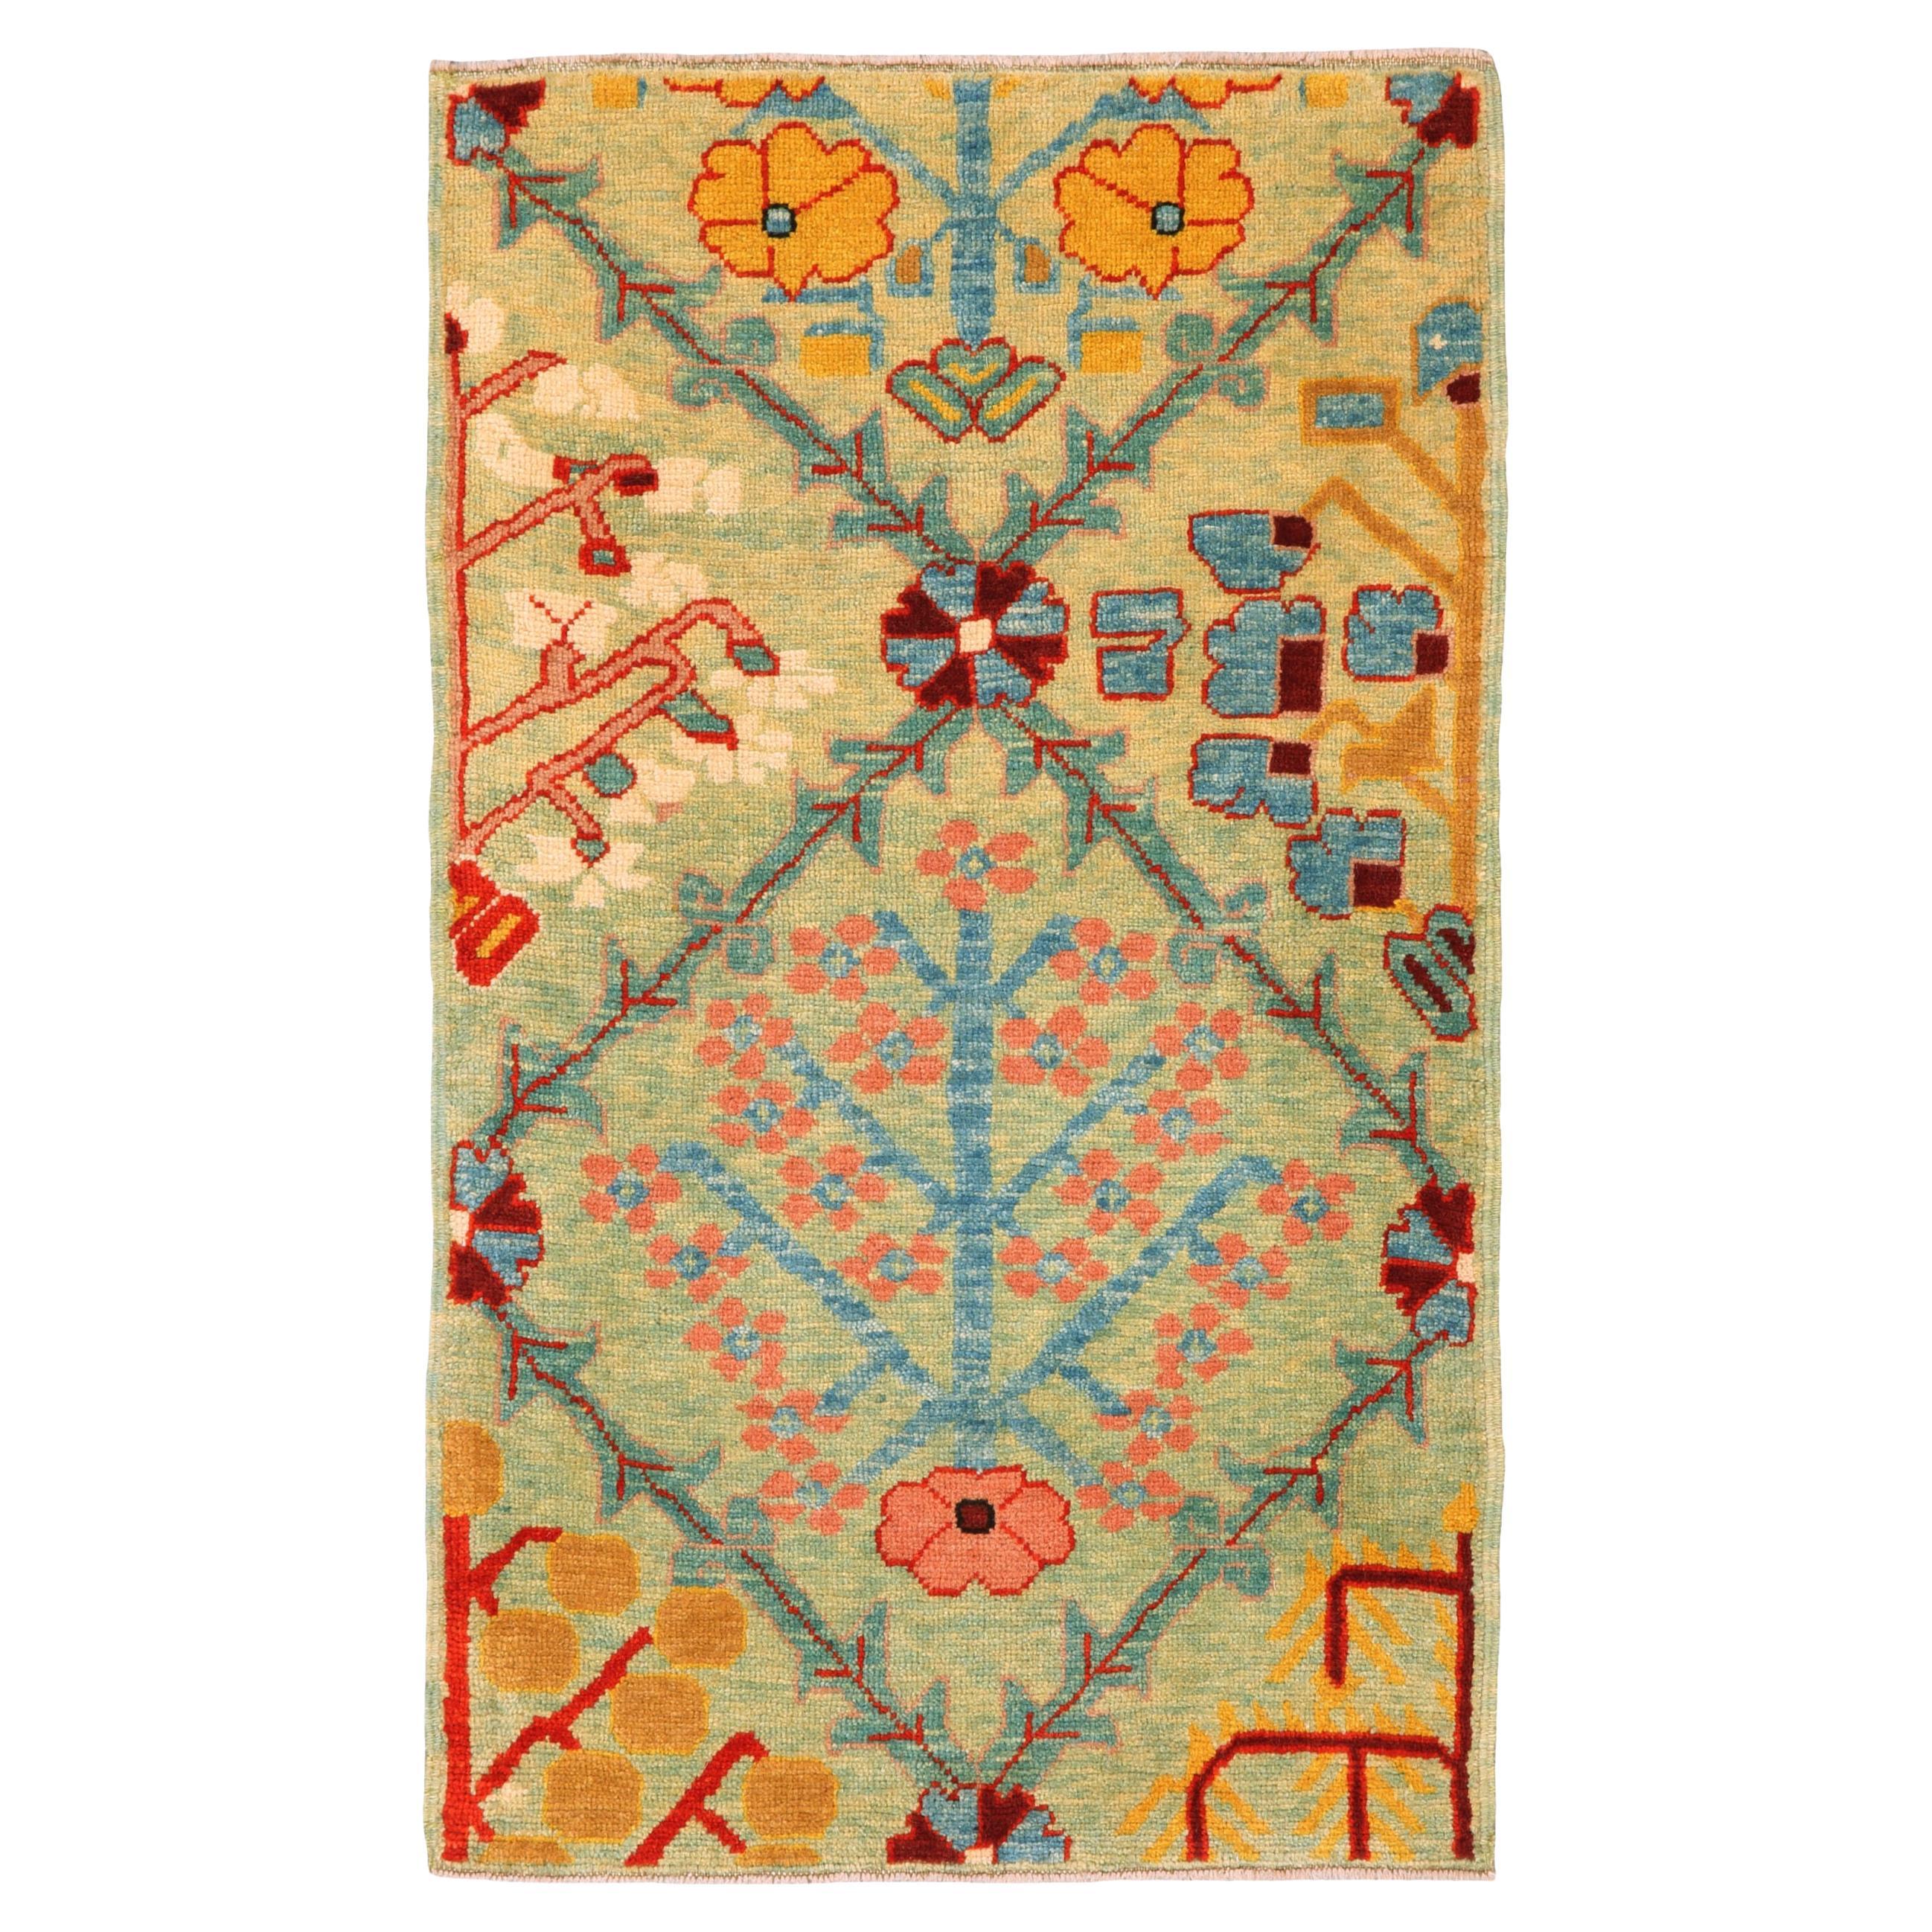 Ararat Rugs Shrubs in Lattice Rug Kurdish Persian Revival Carpet Natural Dyed For Sale